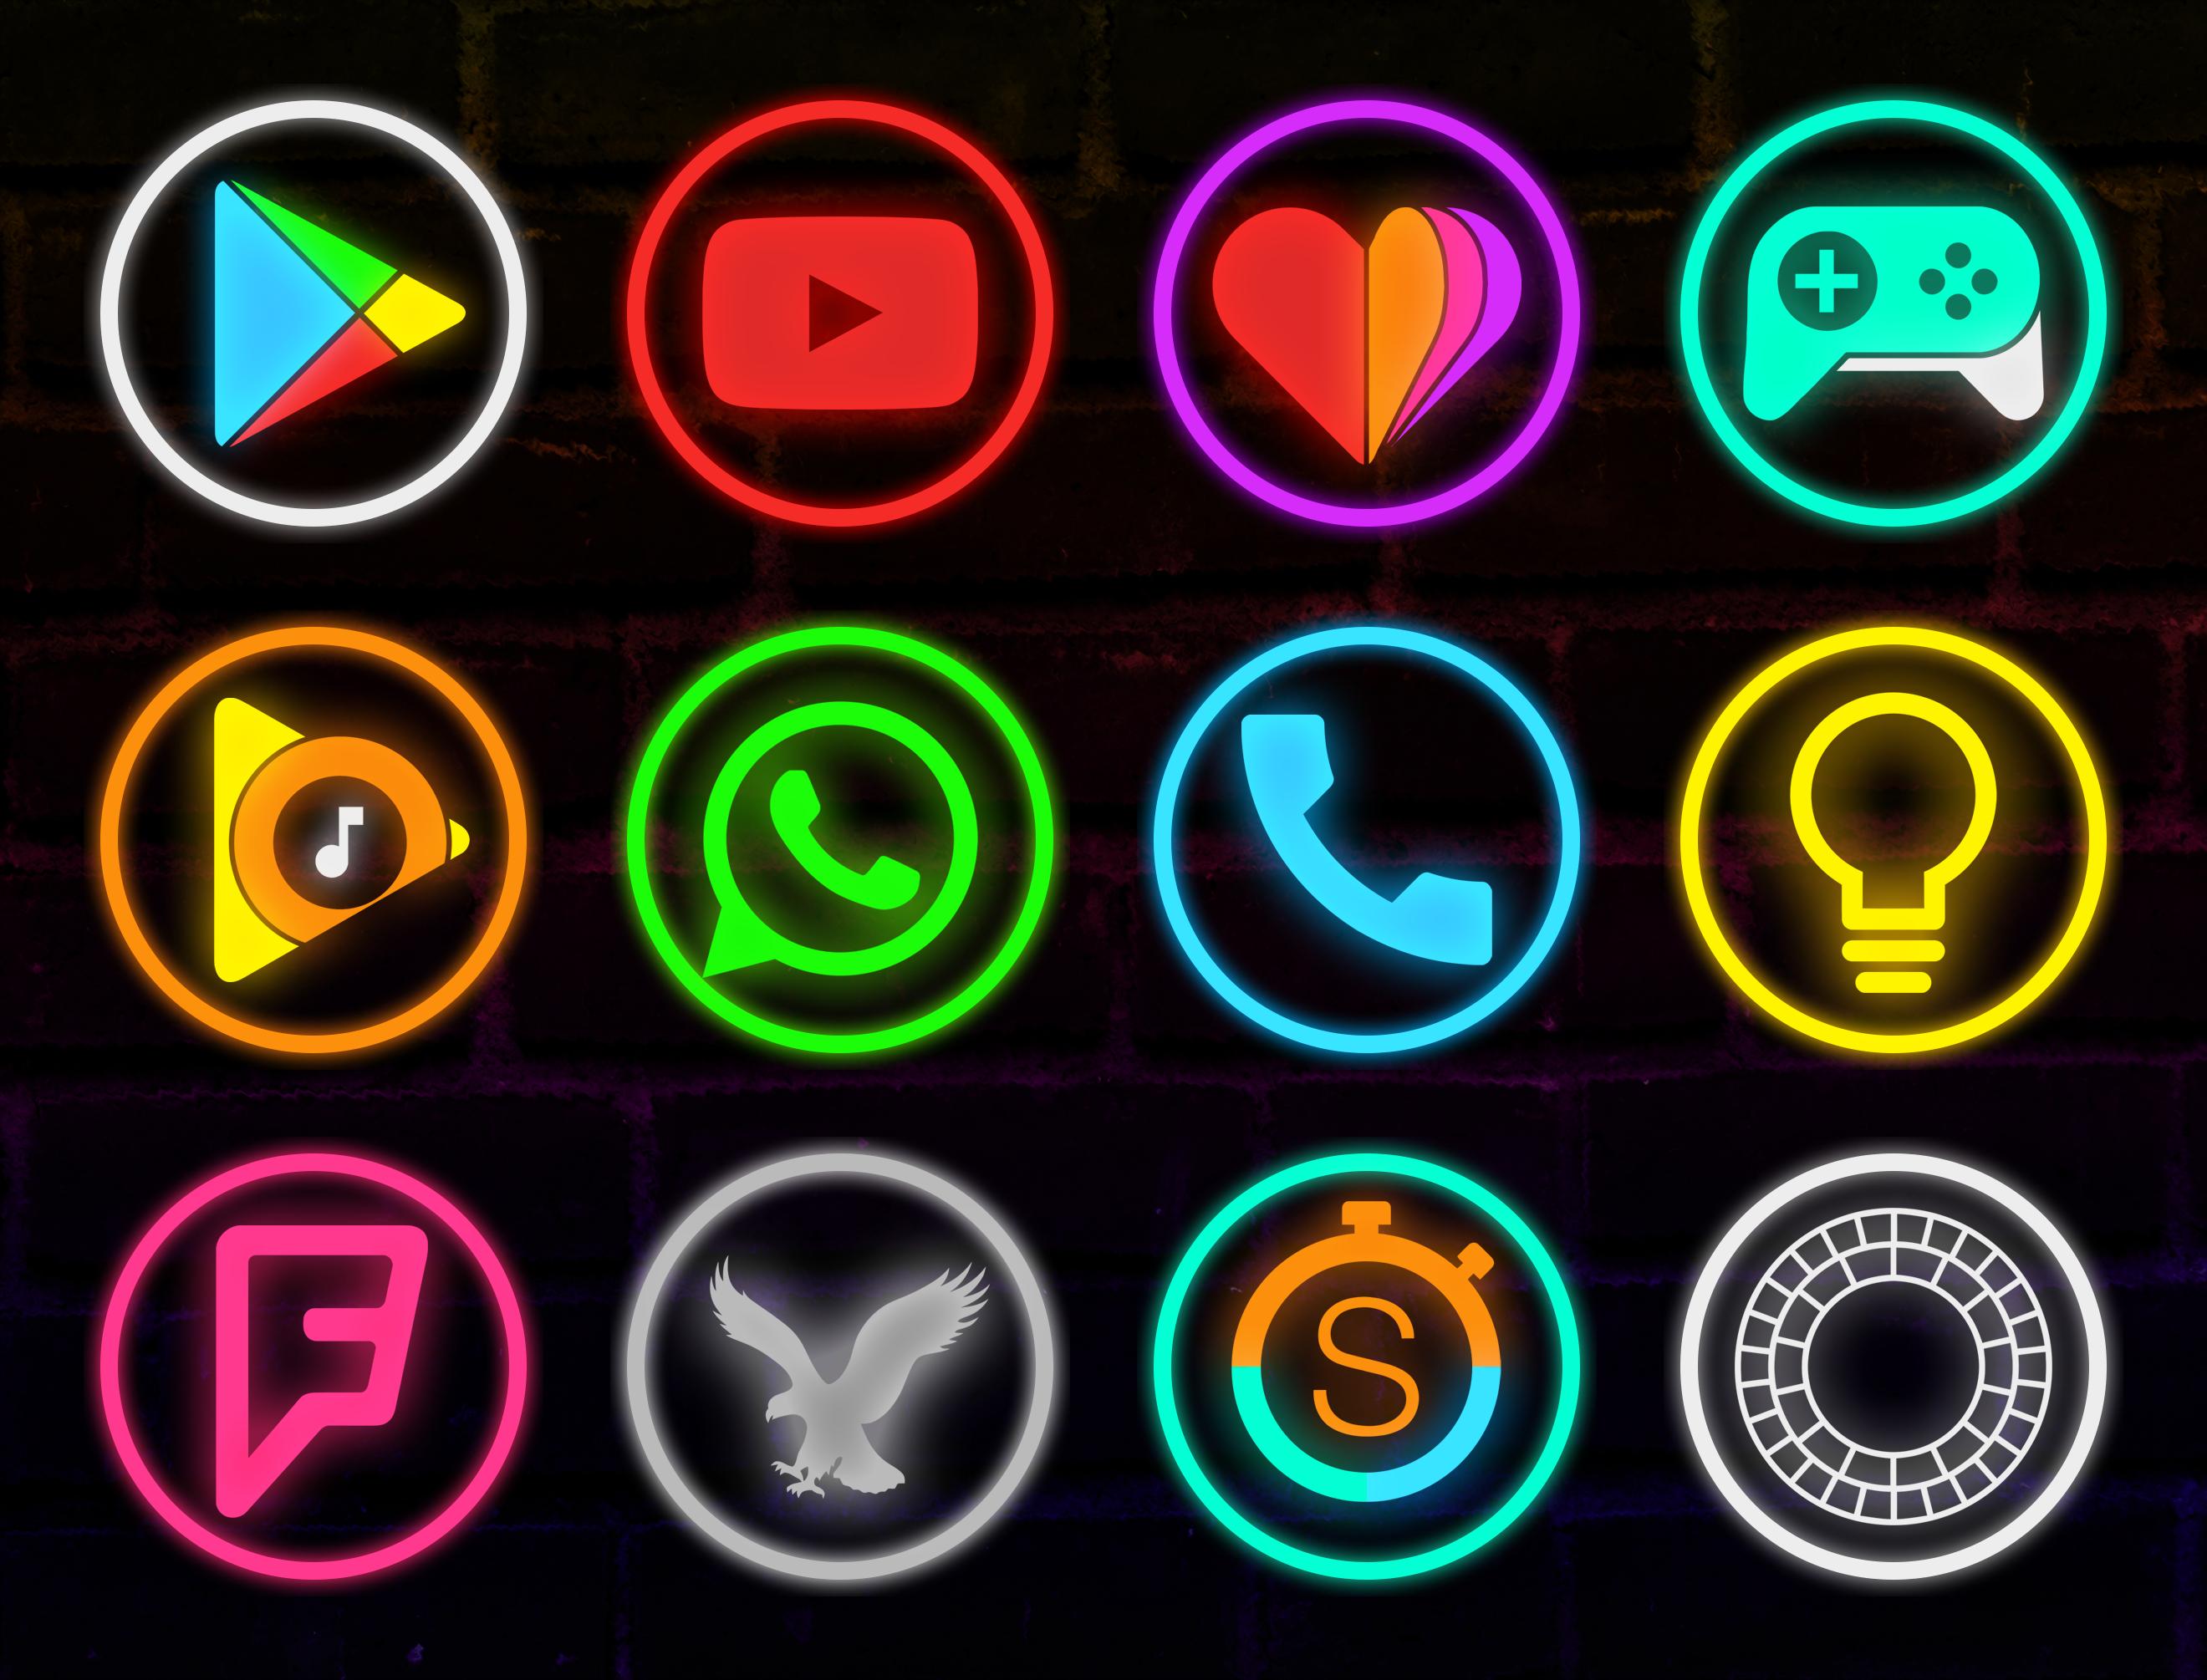 Neon icons. Красивые значки для приложений. Неоновые значки. Неоновые иконки. Иконки для приложений неон.